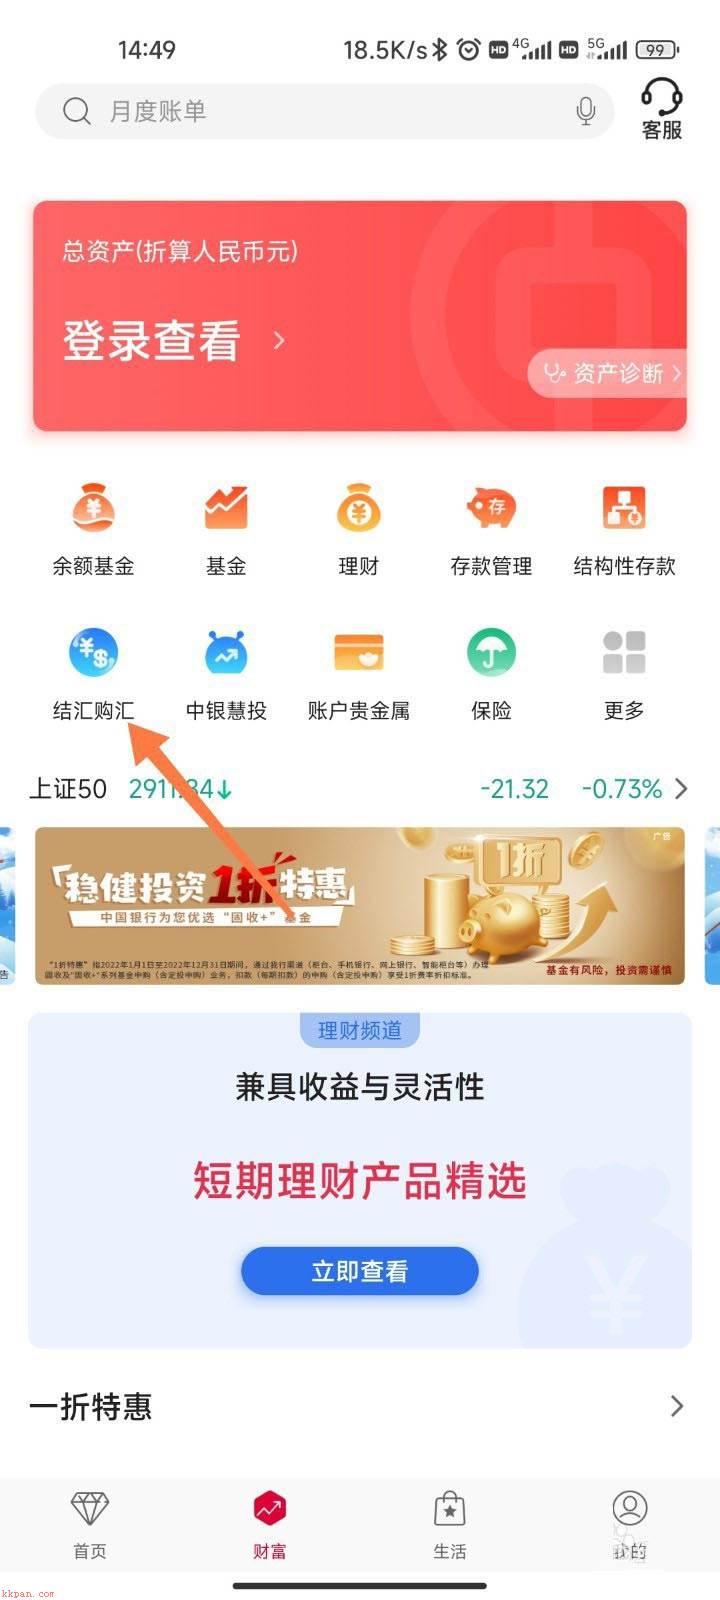 中行app卢布怎么兑换? 中国银行购买卢布外汇的技巧